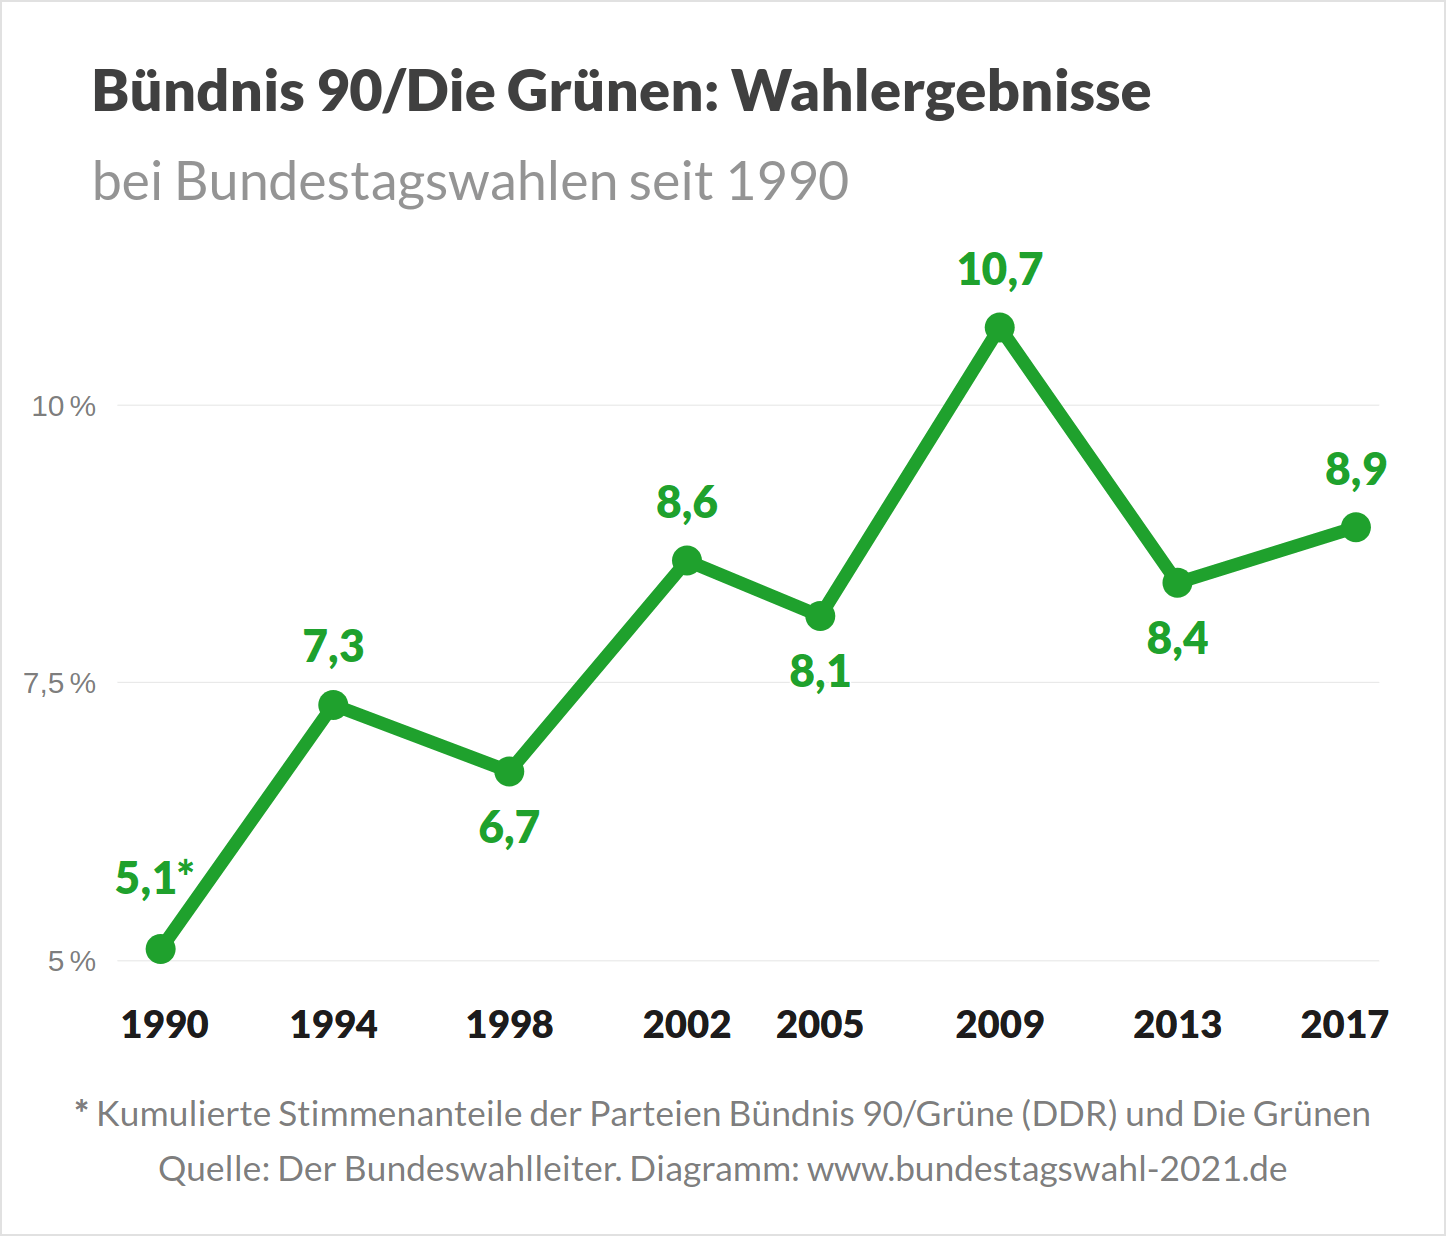 Wahlergebnisse von Bündnis 90-Die Grünen bei Bundestagswahlen